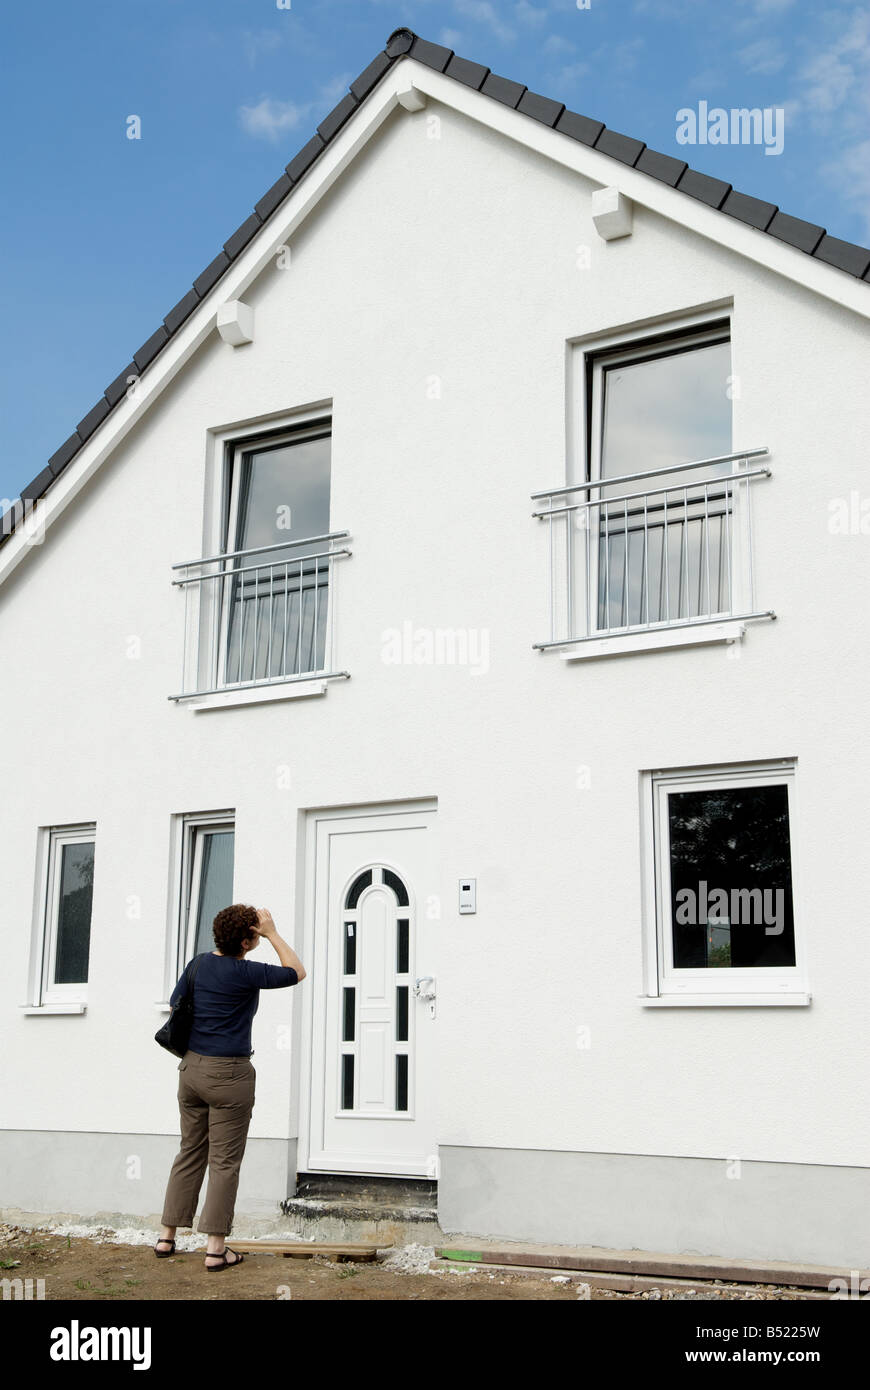 Primera vez comprador de casa en la puerta de su casa recién construida Foto de stock